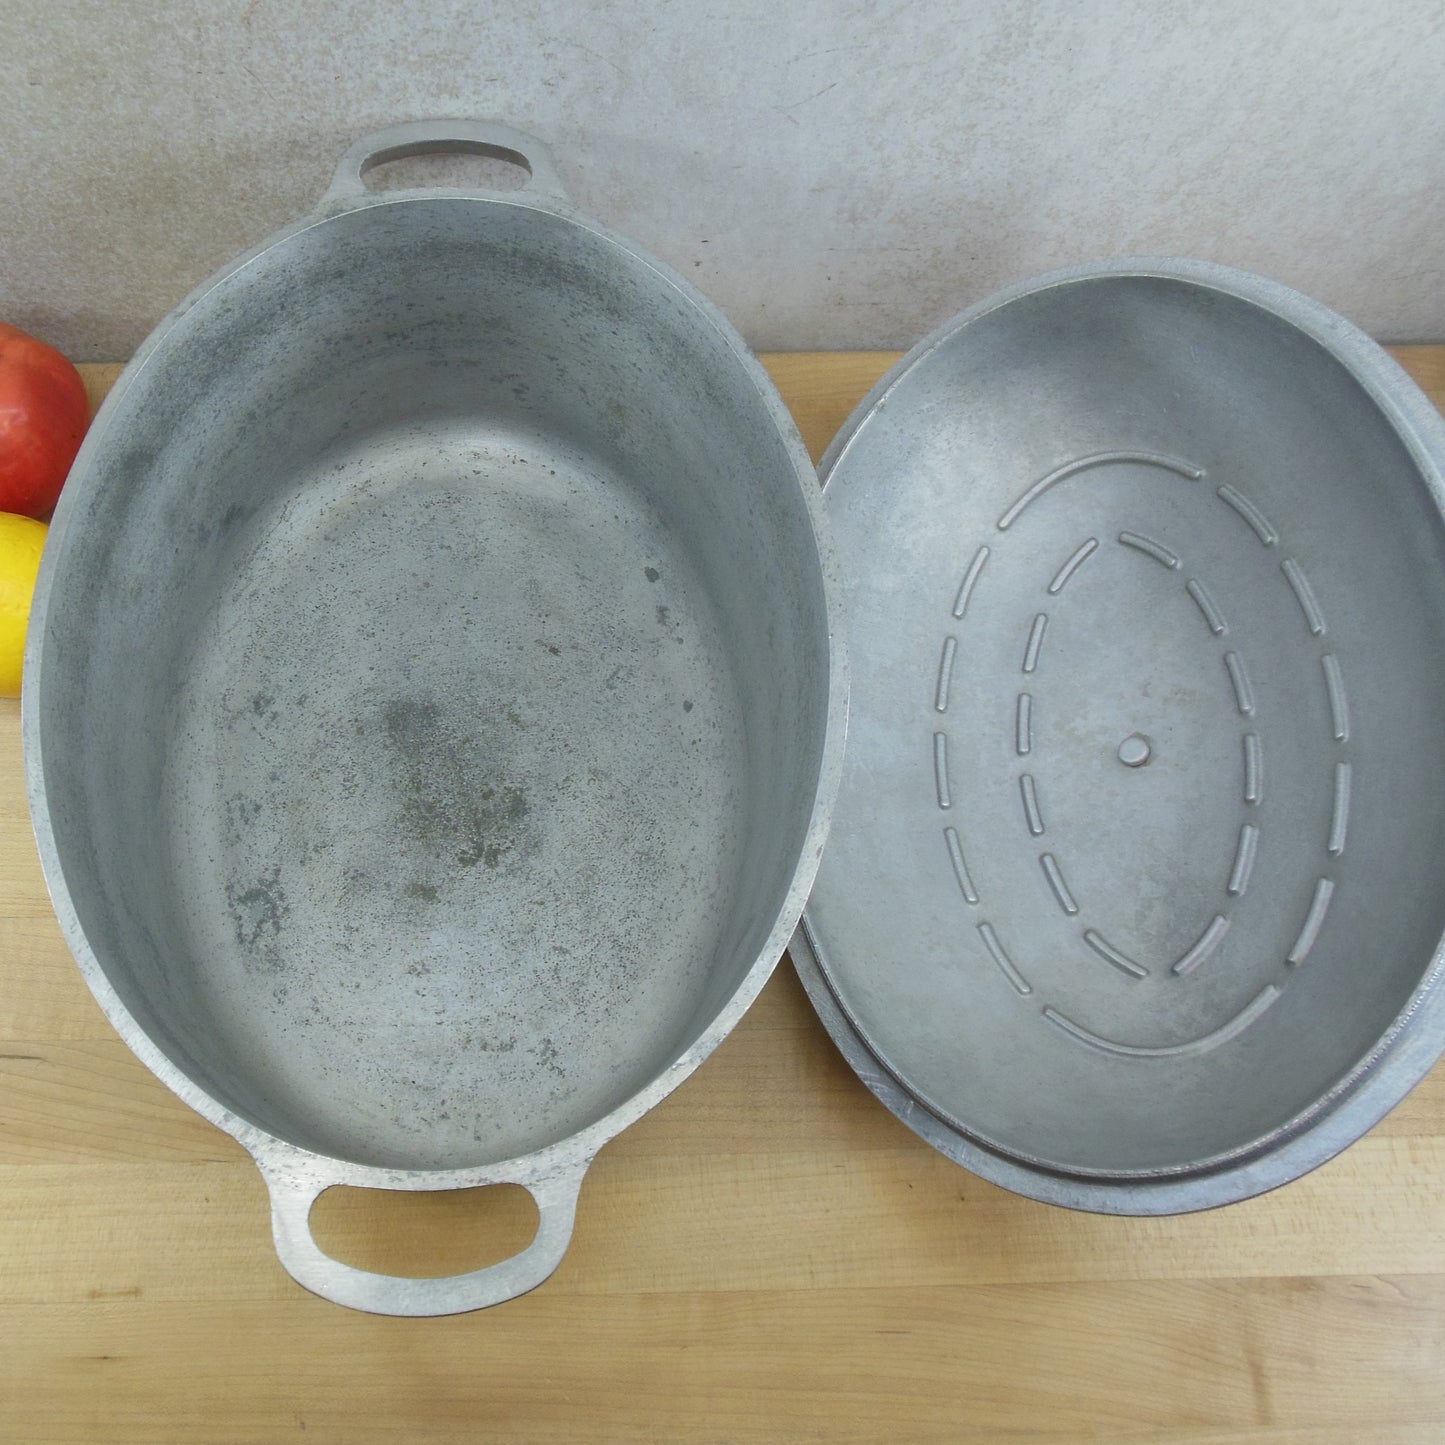 Super Maid Cast Aluminum Cookware 6 Quart Oval Roaster Pot